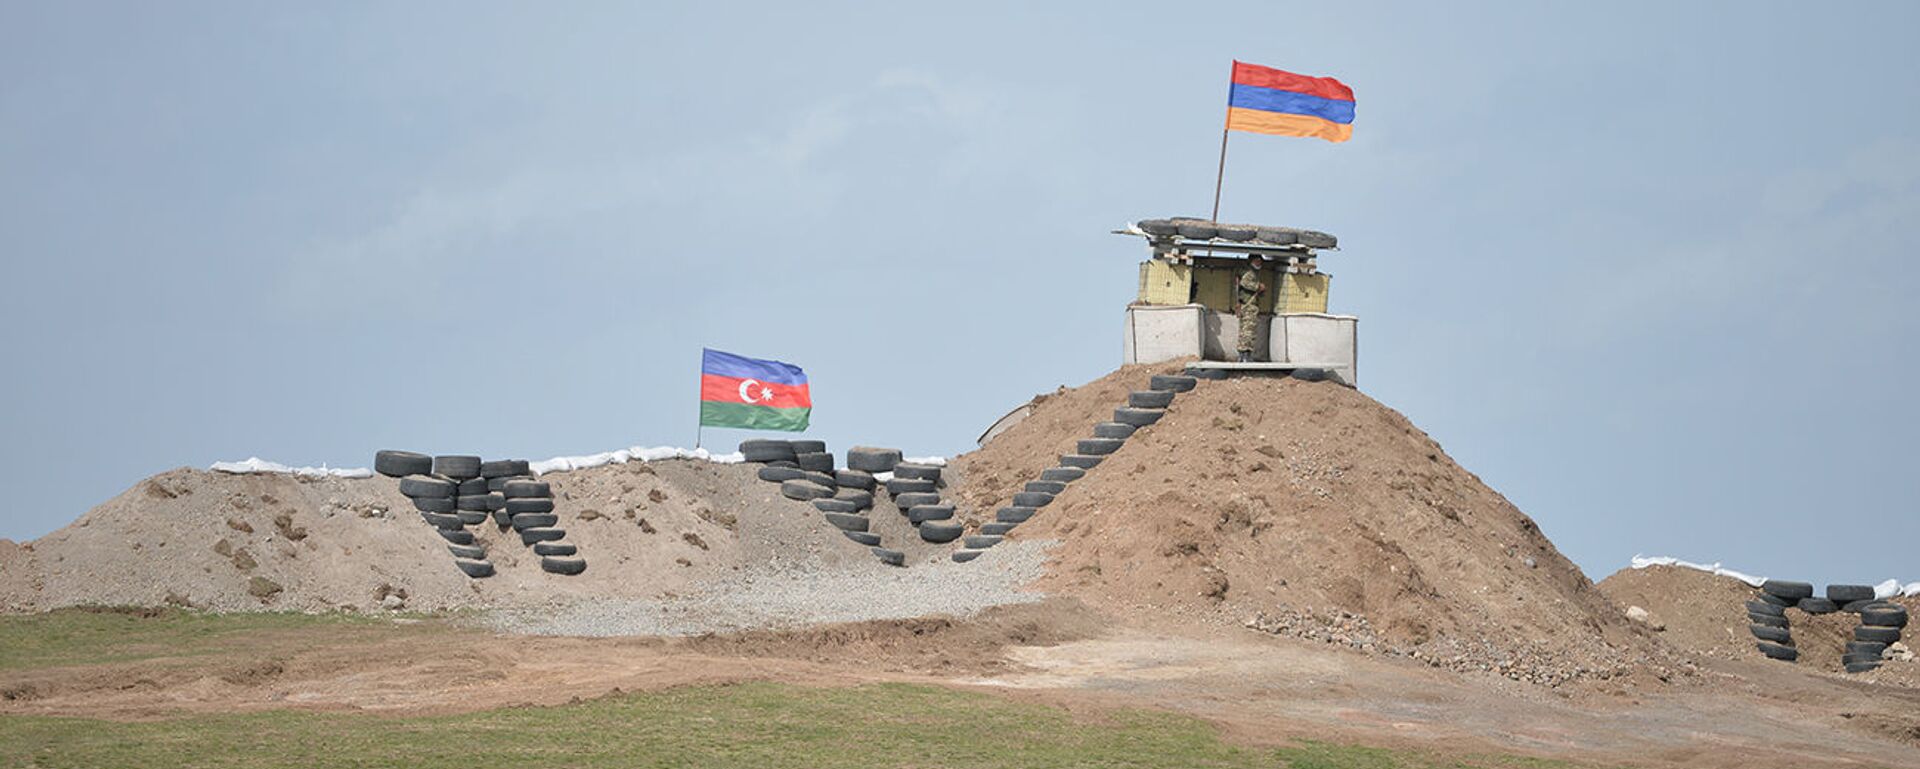 Военные посты на армянсо-азербайджанской границе - Sputnik Արմենիա, 1920, 28.05.2021